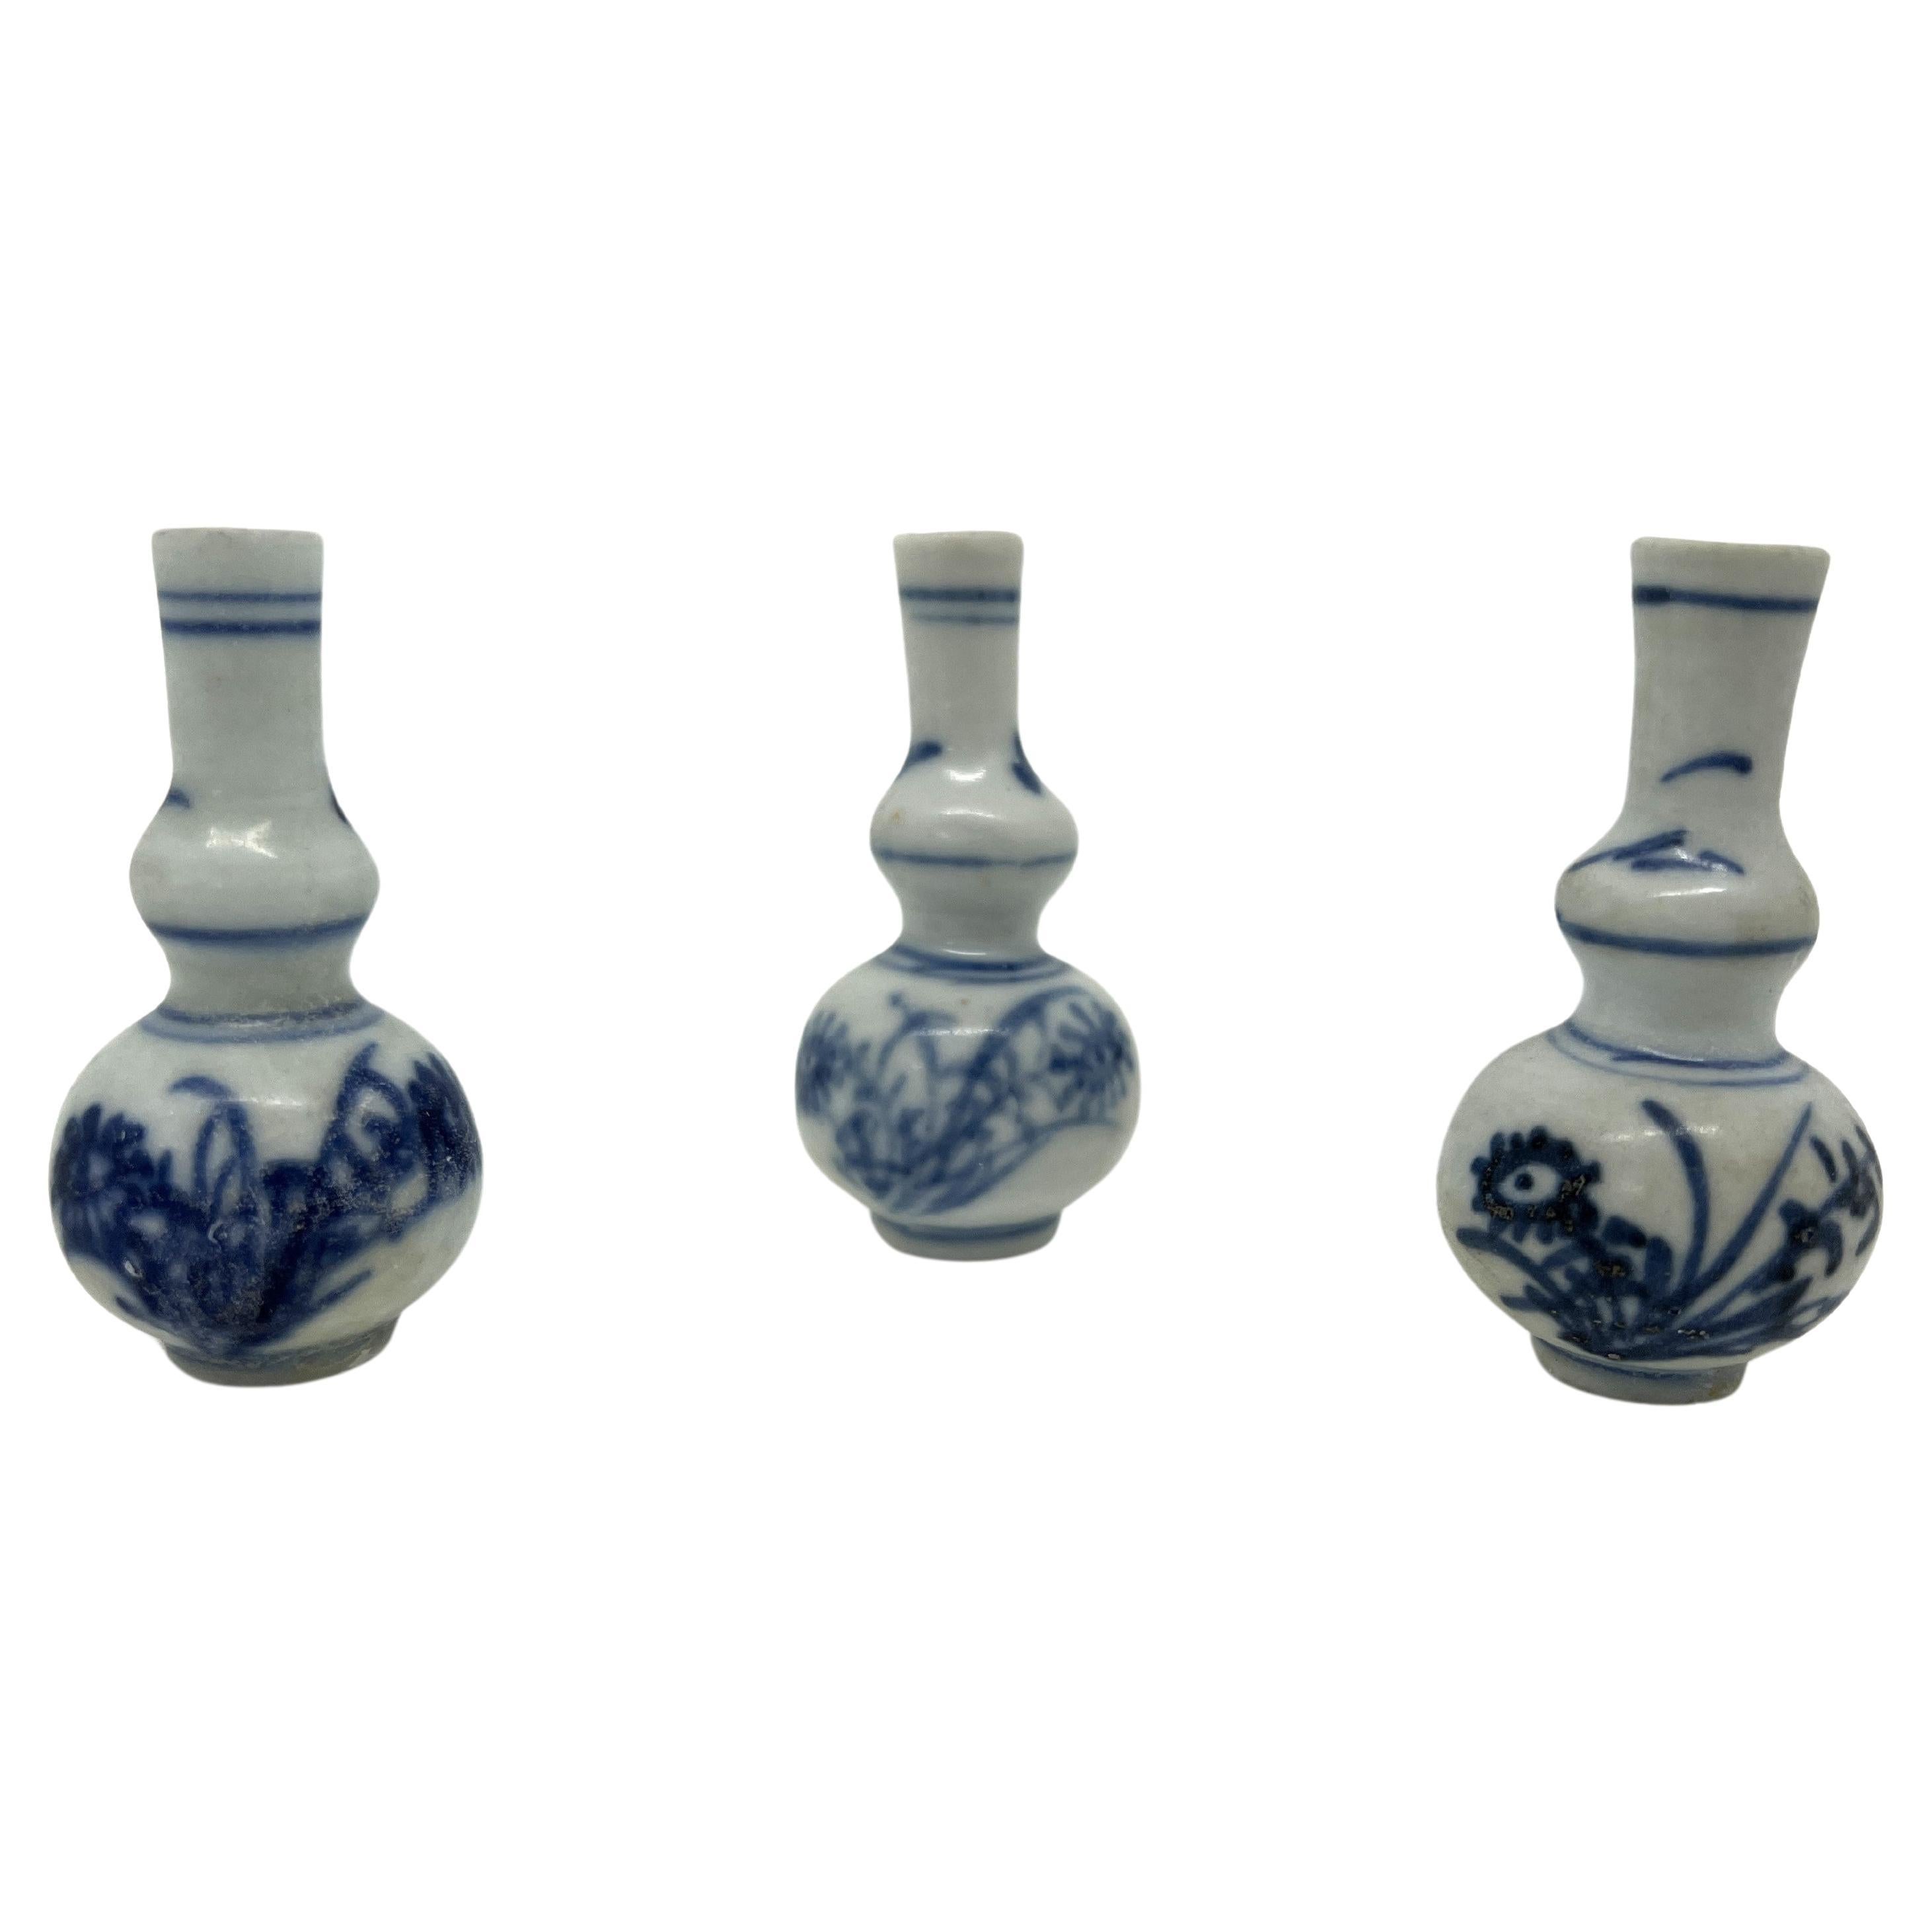 Trois vases miniatures bleu et blanc, C 1725, Dynastie Qing, époque Yongzheng